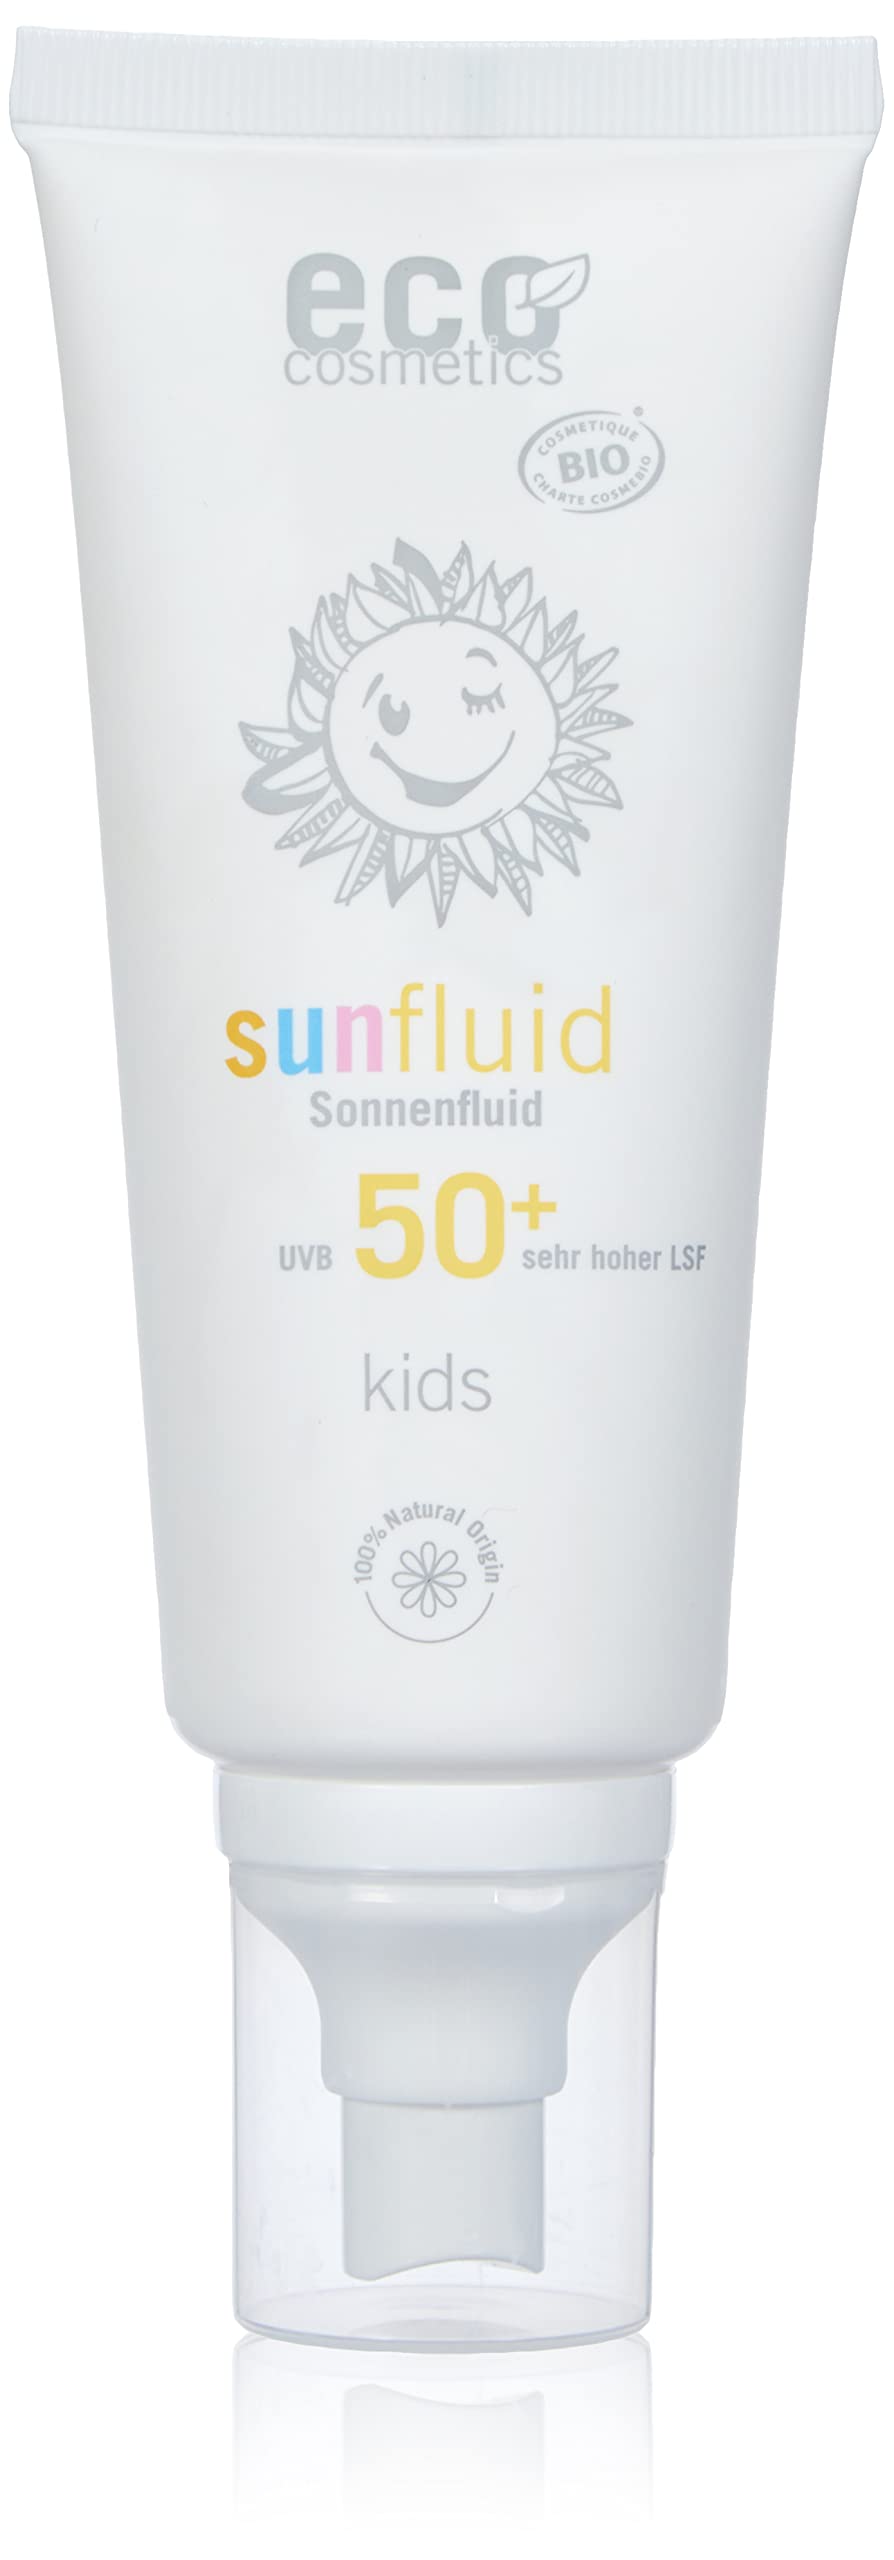 eco cosmetics Kids Sunspray LSF50+, wasserfest, vegan, ohne Mikroplastik, Naturkosmetik für Gesicht und Körper, 1 x 100 ml